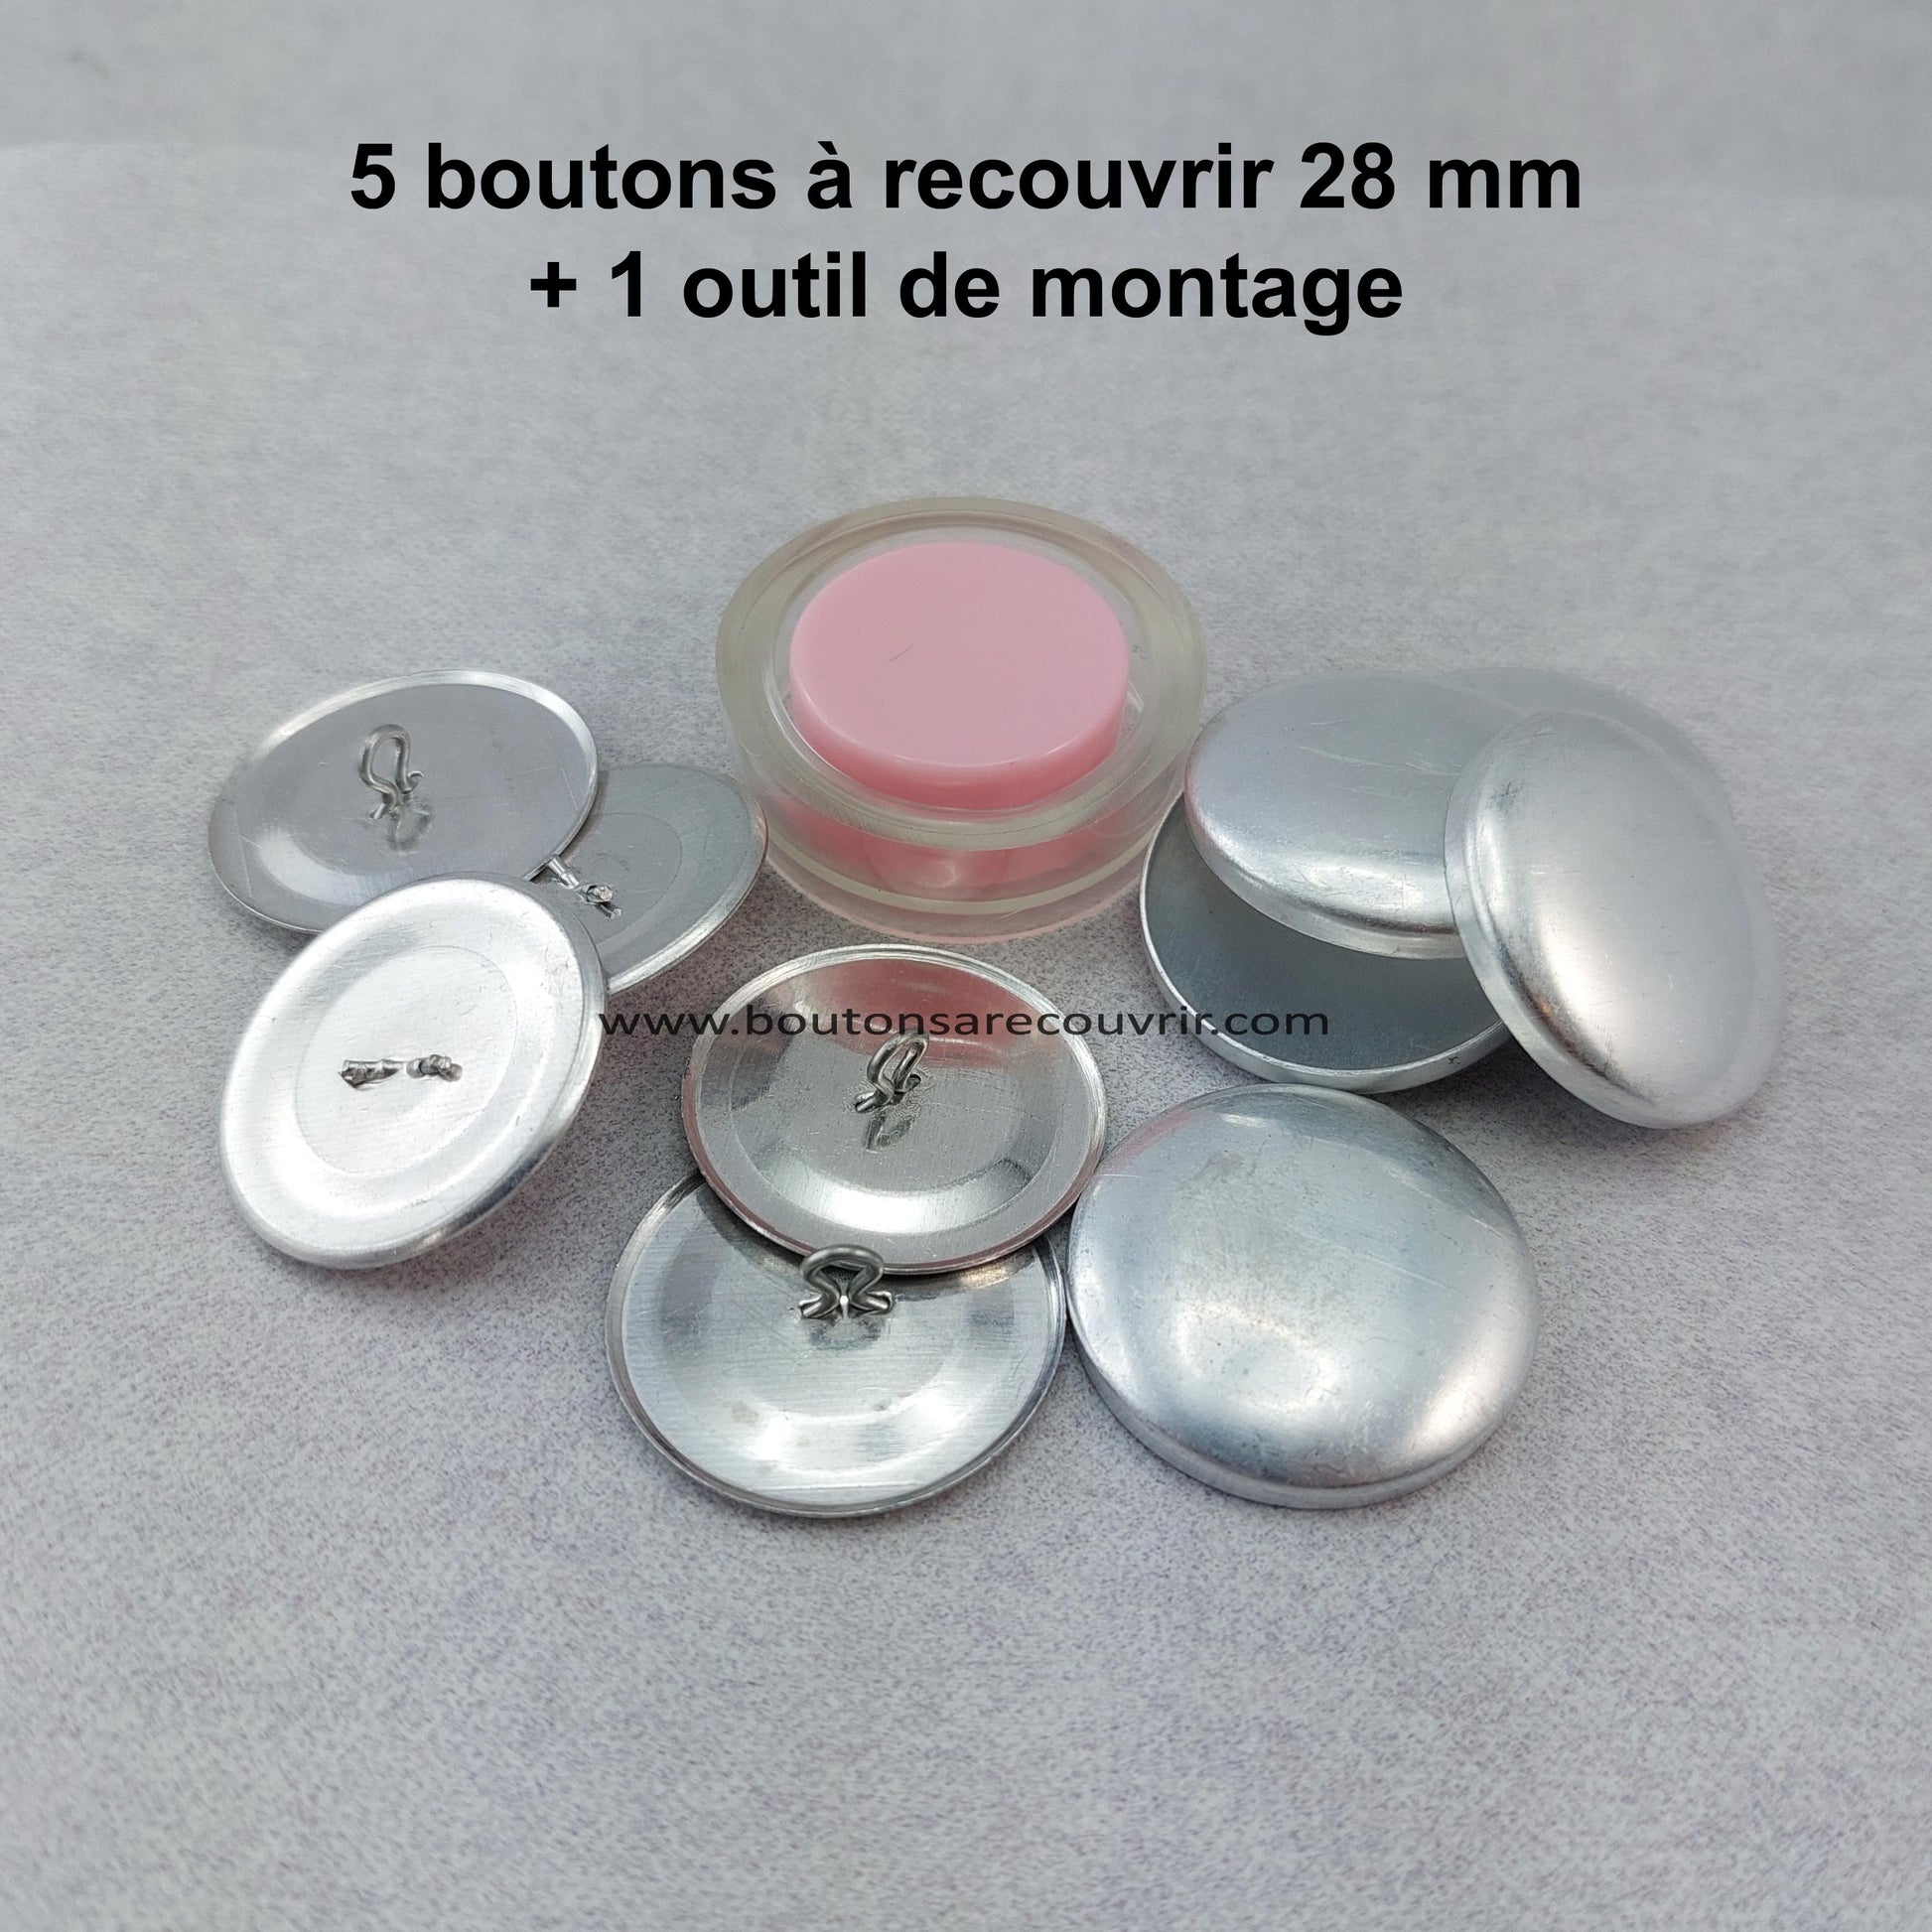 5 boutons à recouvrir 28 mm avec outil de montage